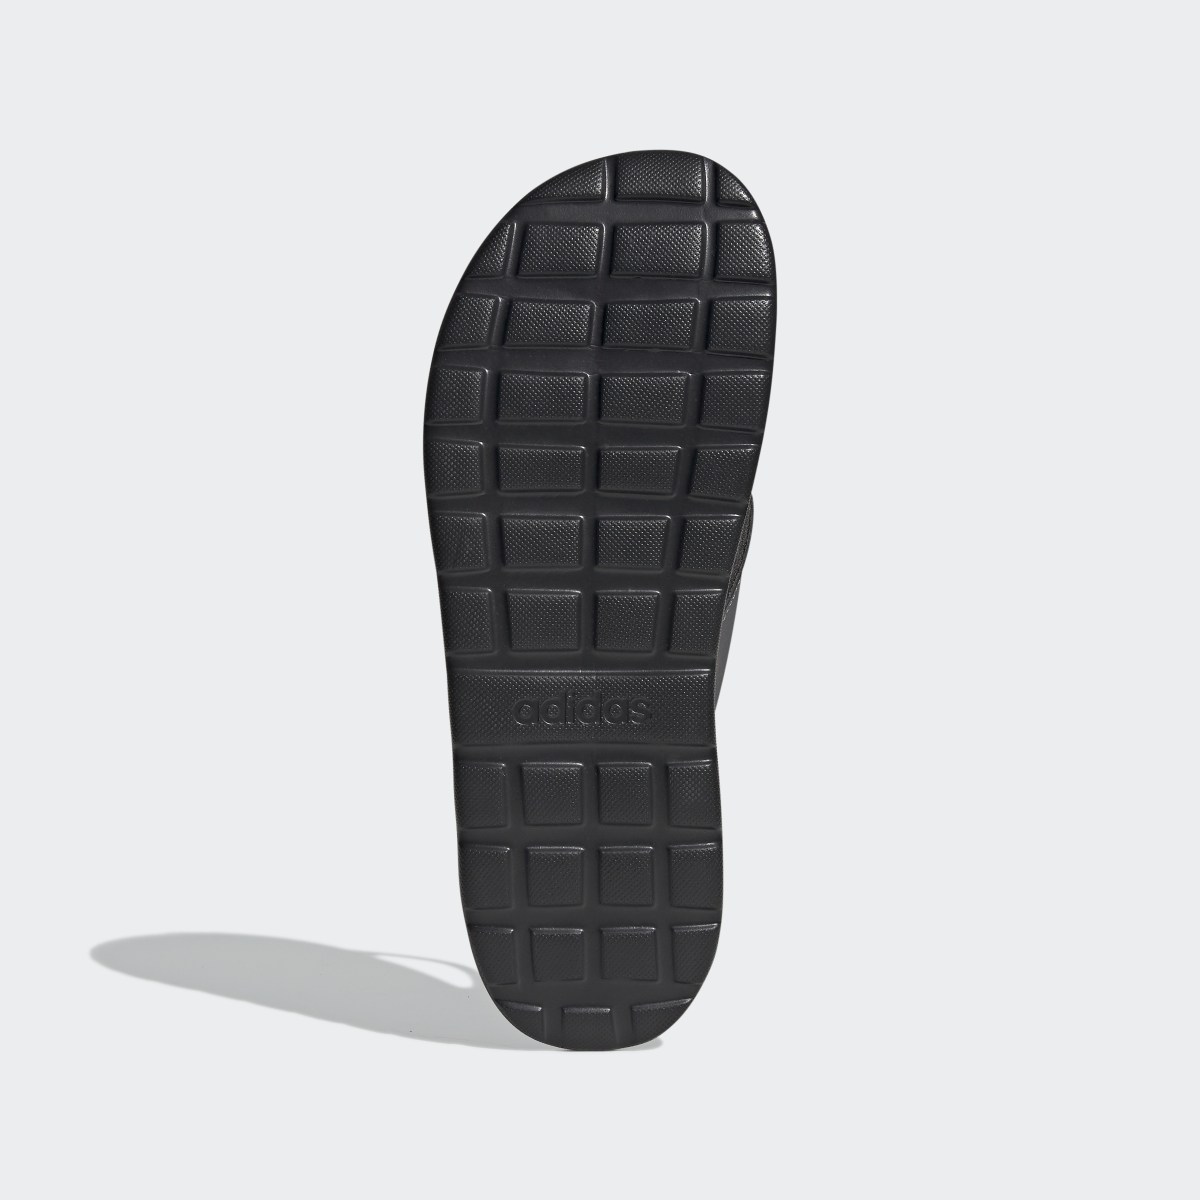 Adidas Comfort Flip-Flops. 4